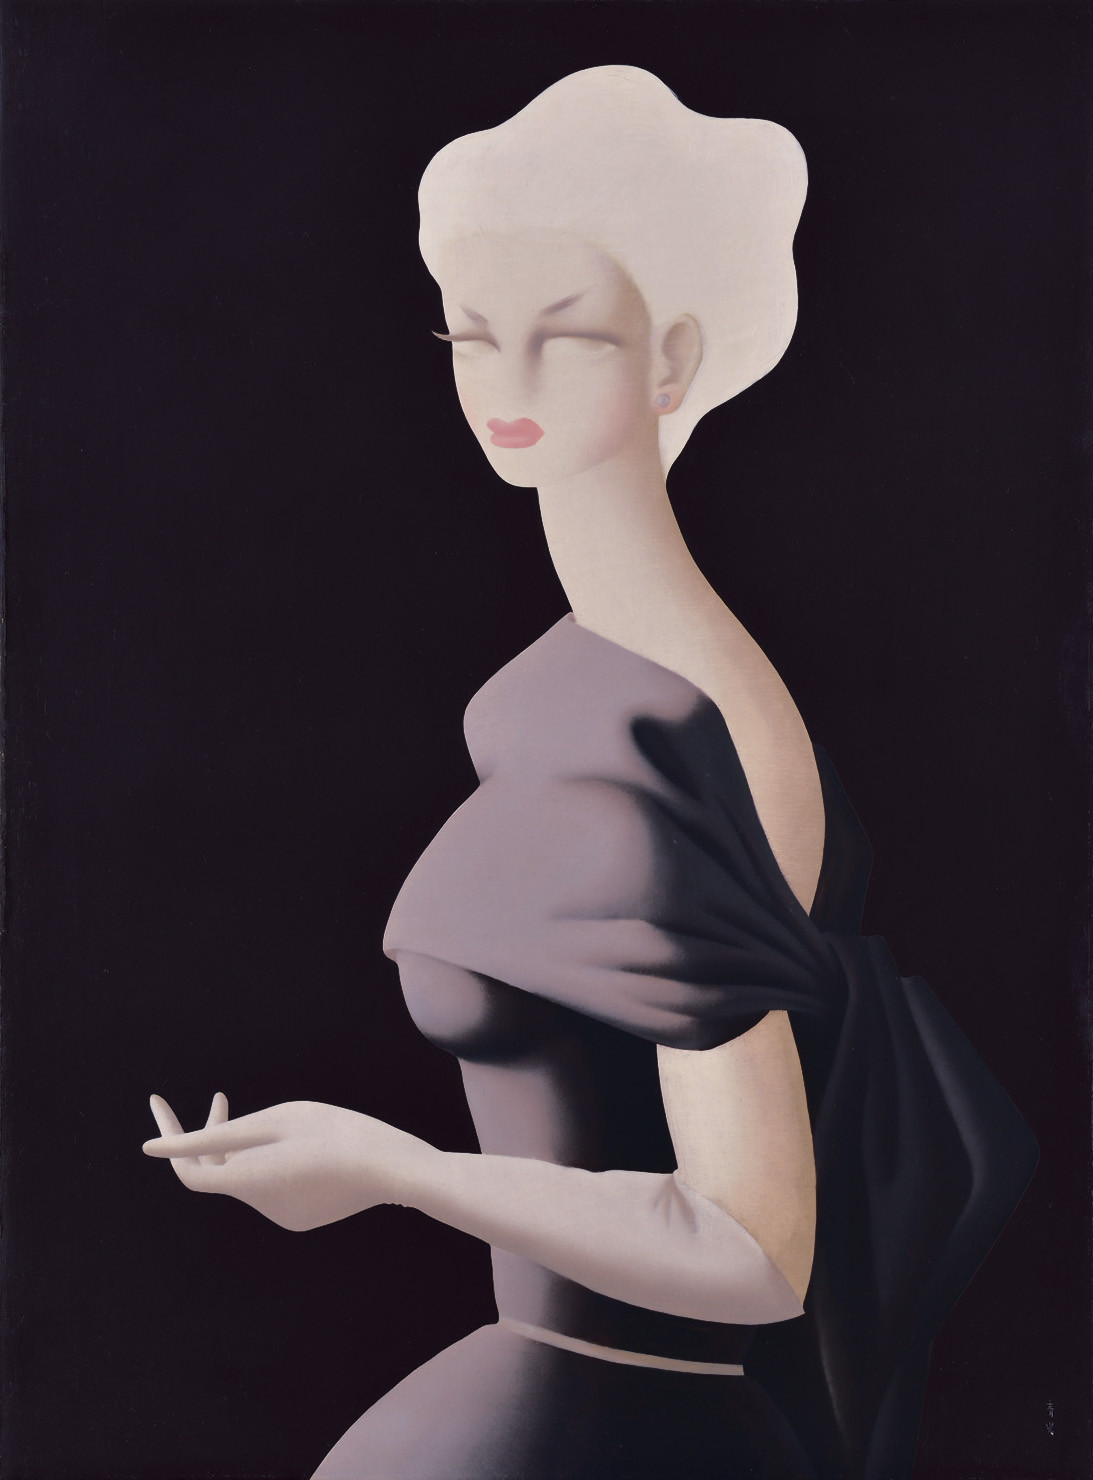 《バイオレット》1952年 損保ジャパン日本興亜（油彩・キャンヴァス、108.4×80.0cm）